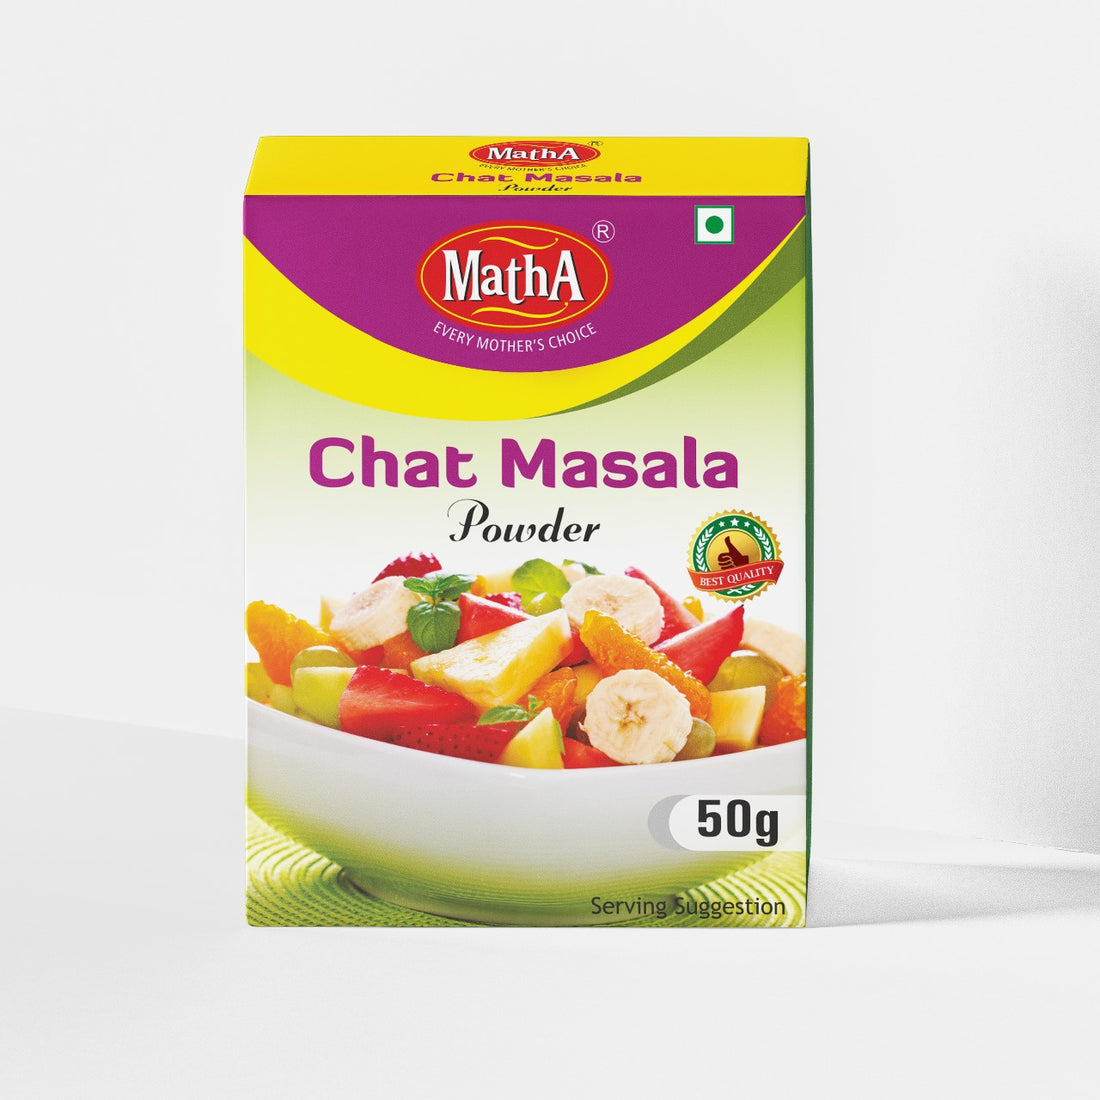 Chat Masala Powder 50g Box